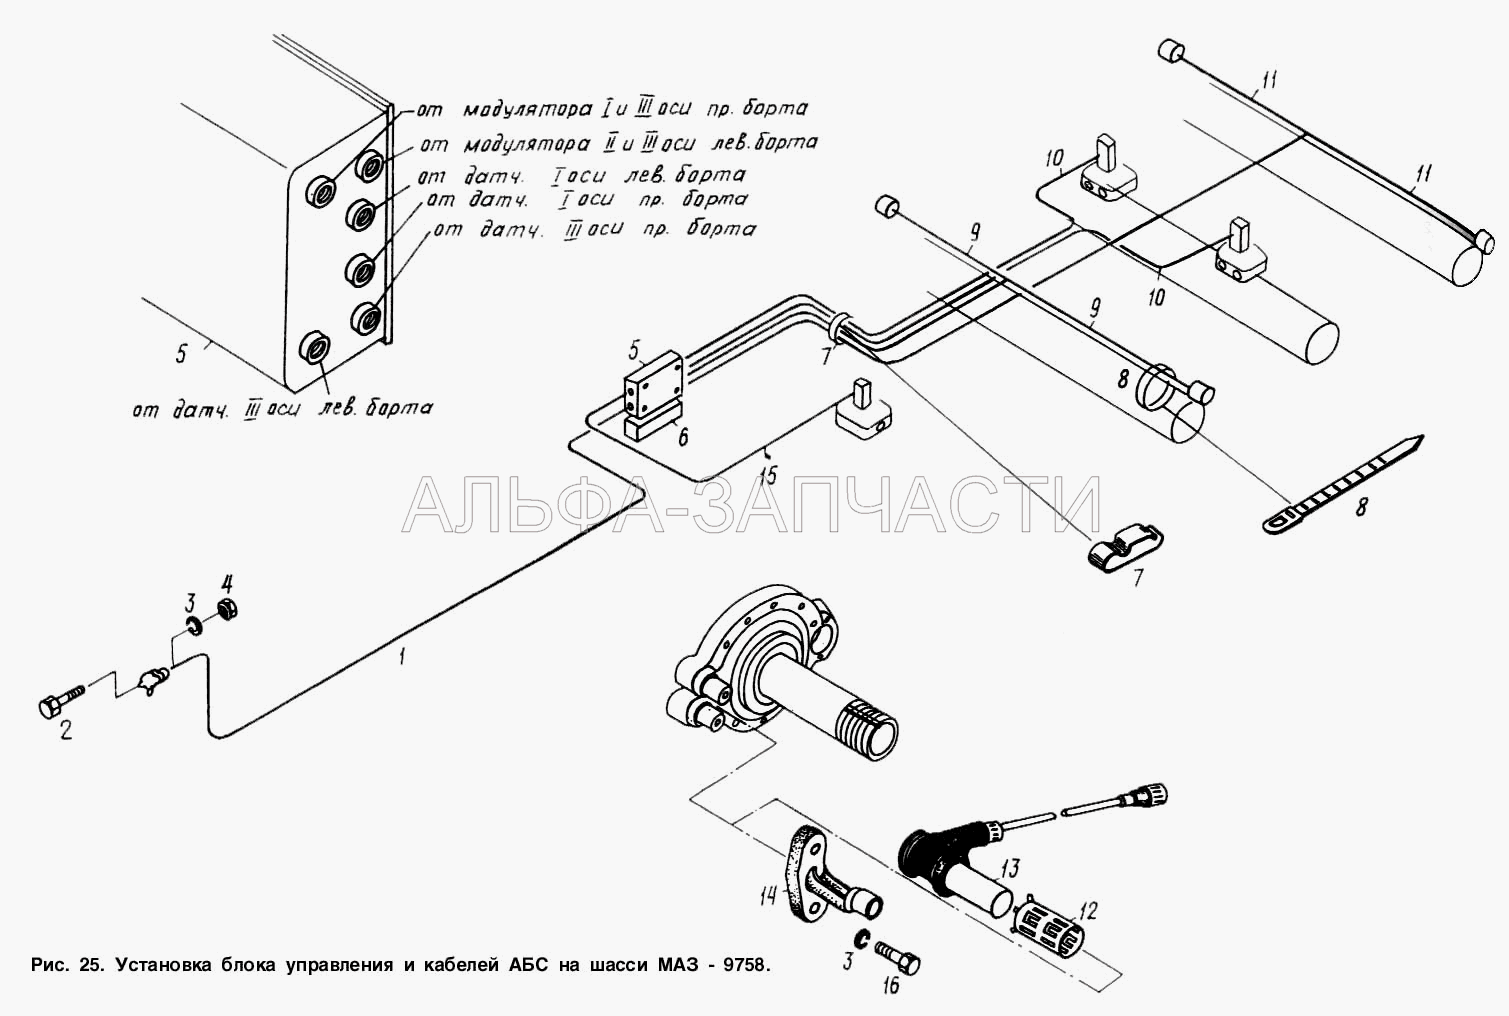 Установка блока управления и кабелей АБС на шасси МАЗ-9758  